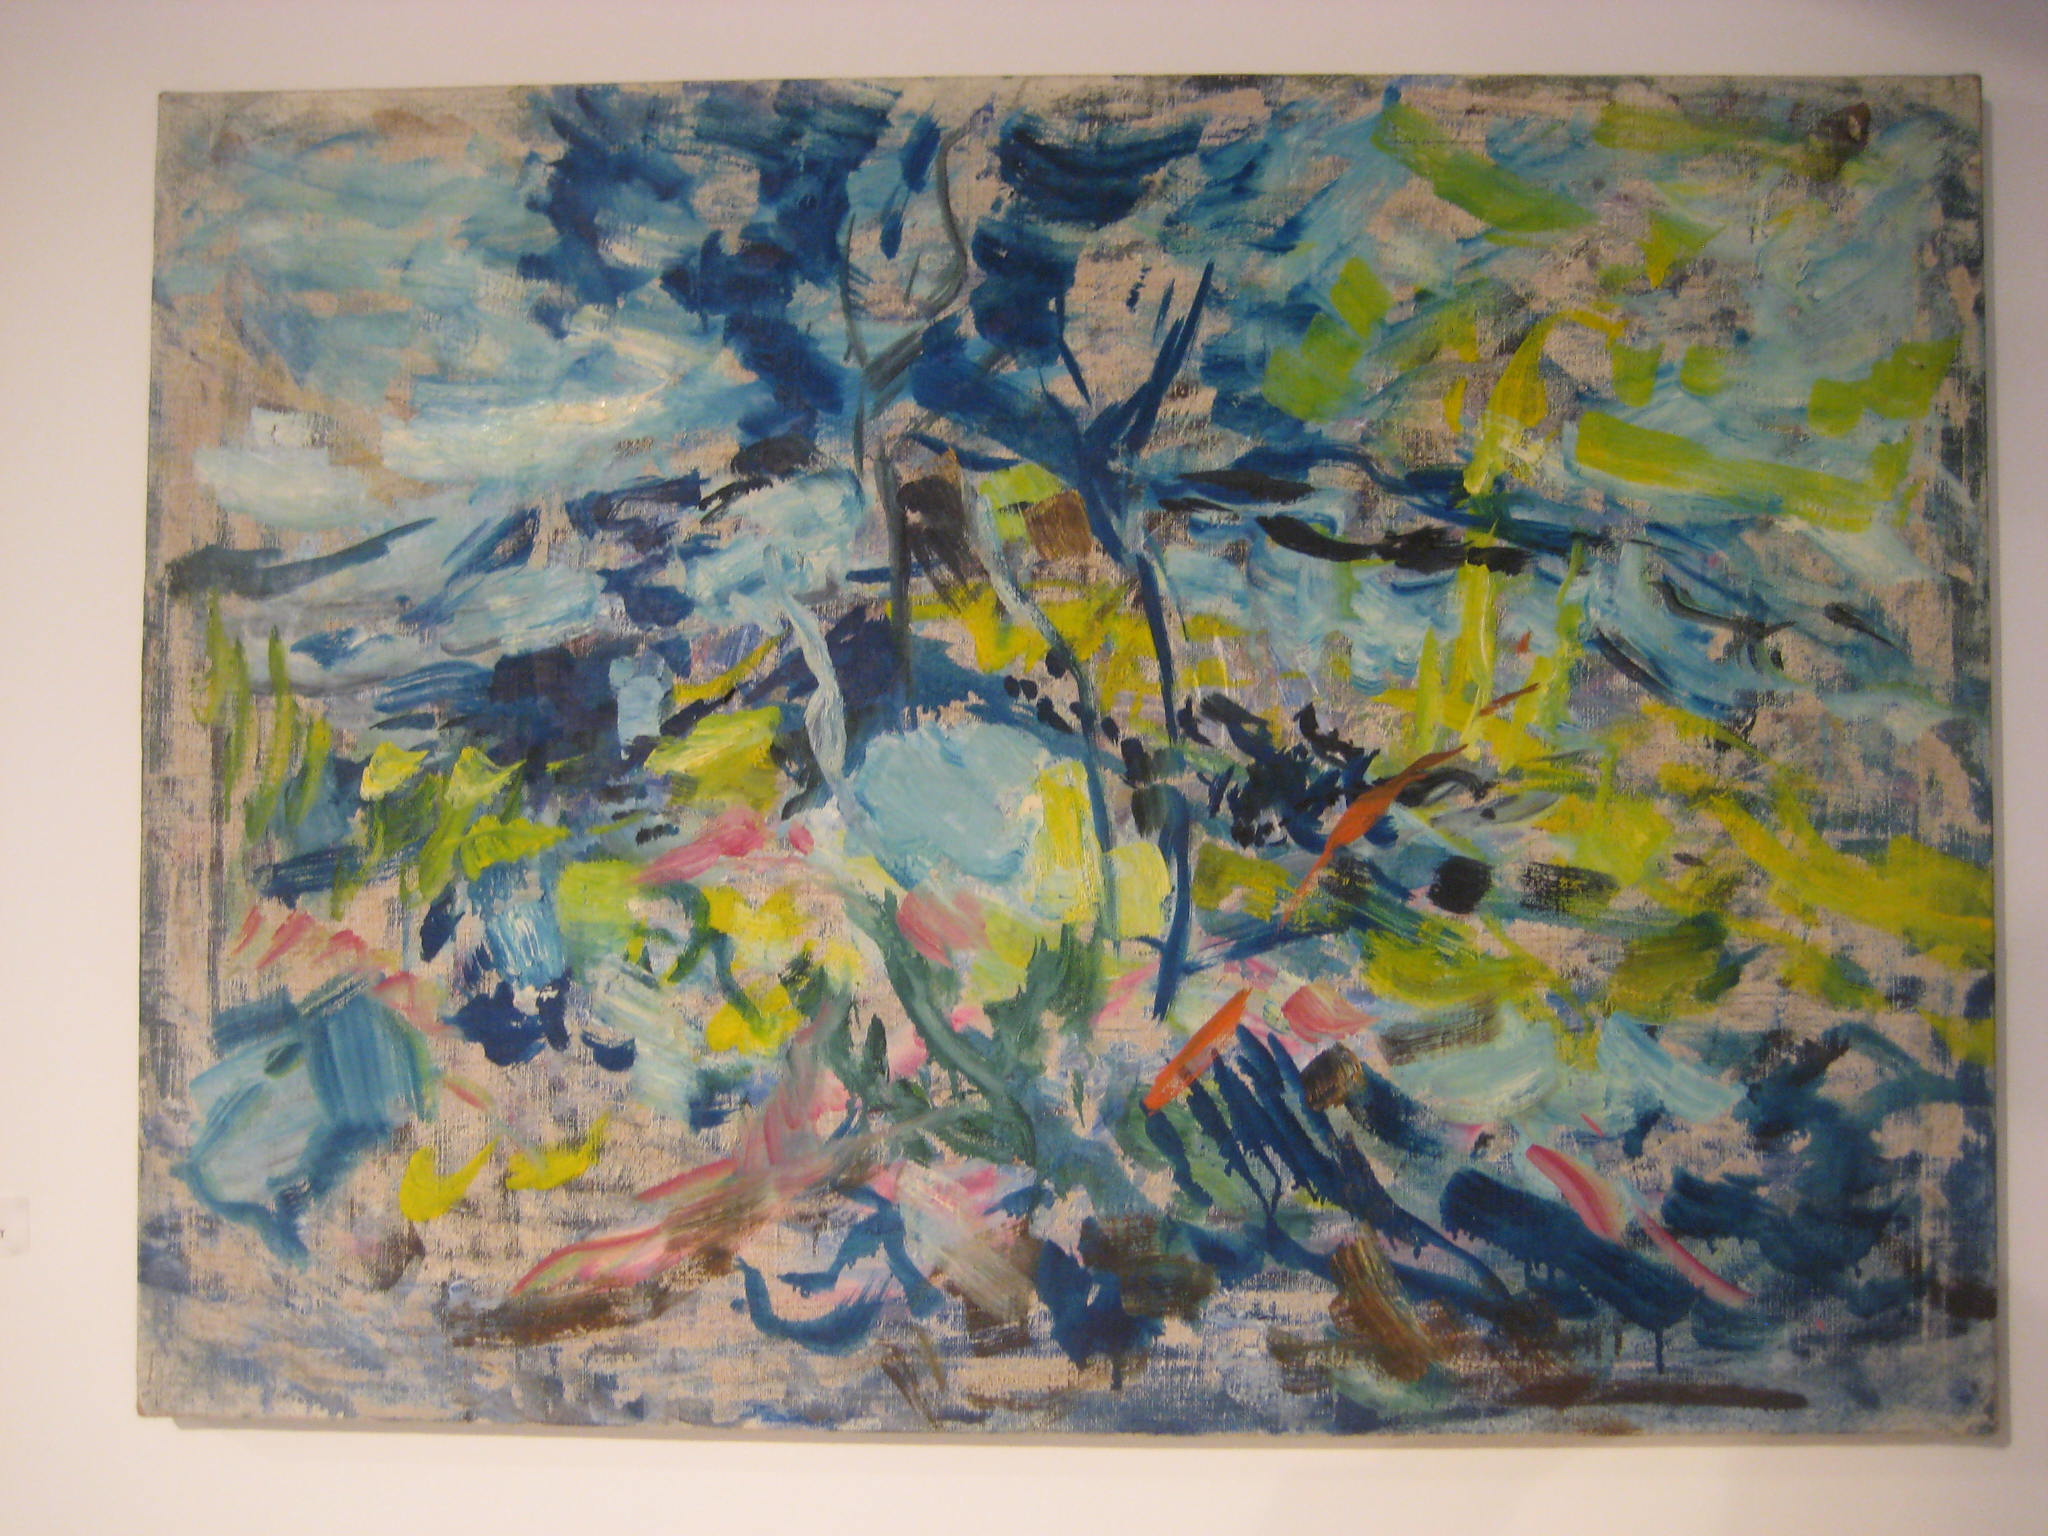 Exposition Explosantes-fixes, Jacques Mandelbrojt, sans titre, huile sur toile, 73X100 cm, 1956